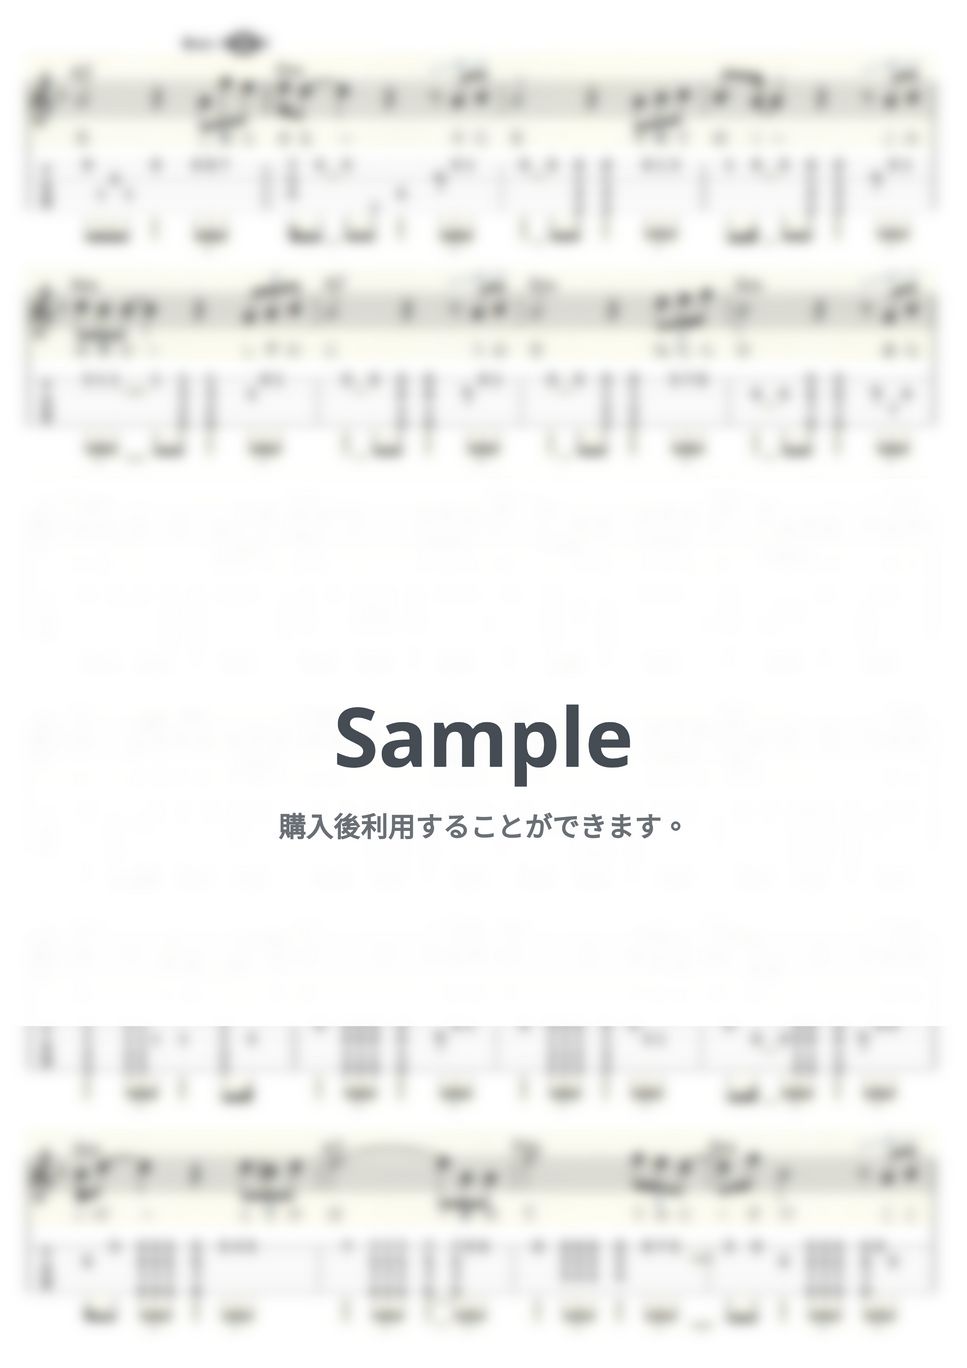 谷村新司 - 群青～映画『連合艦隊』主題歌～ (ｳｸﾚﾚｿﾛ/Low-G/中級) by ukulelepapa